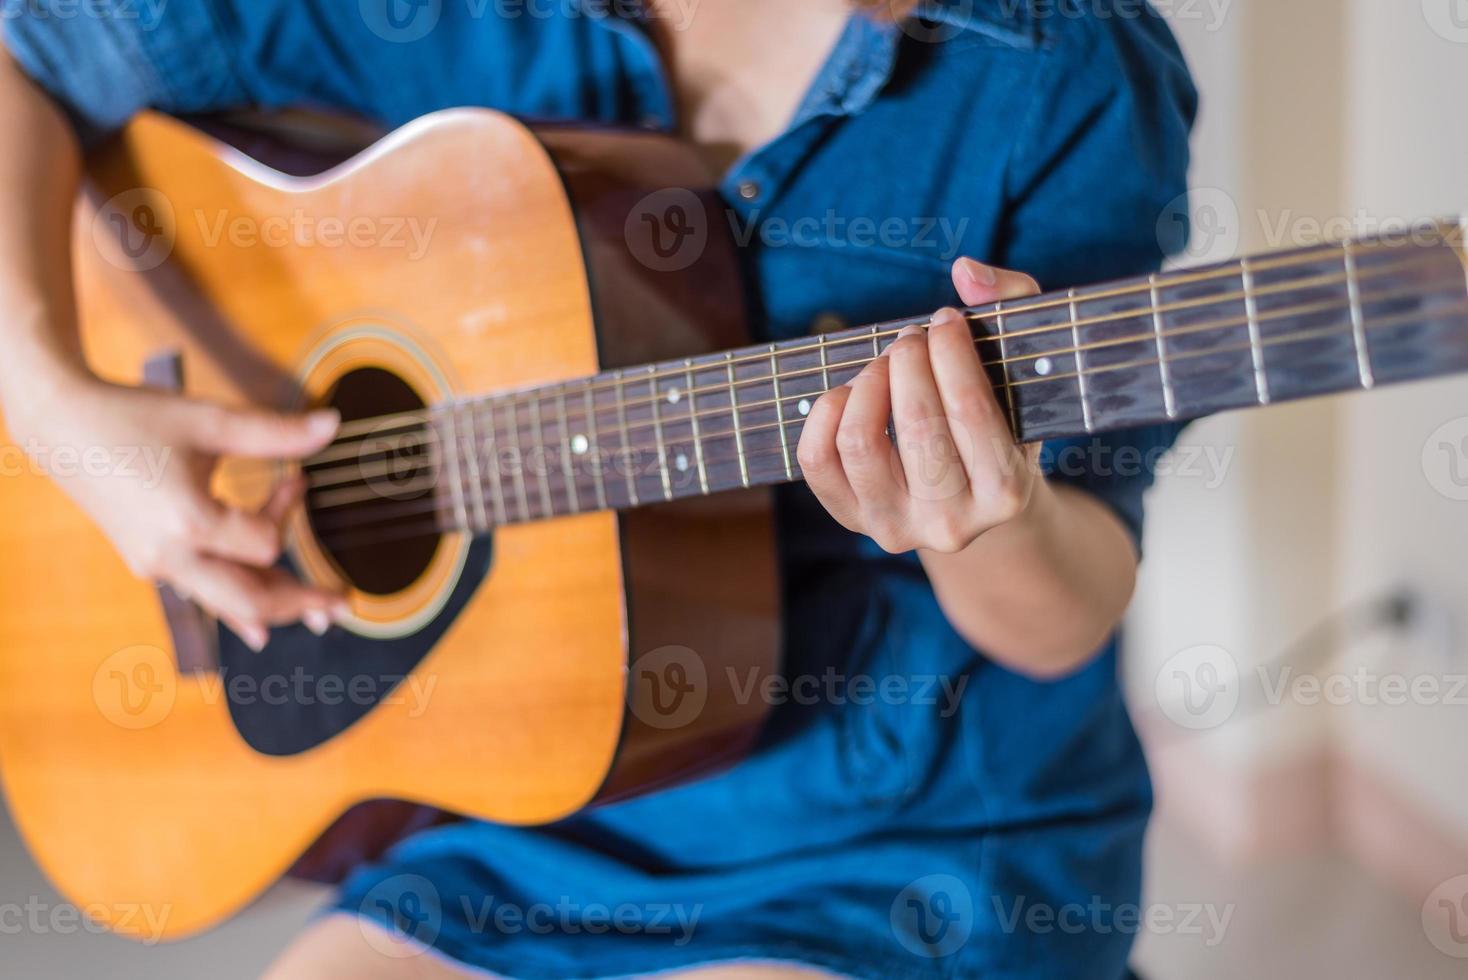 ragazza che gioca l'isolato della chitarra acustica su bianco foto